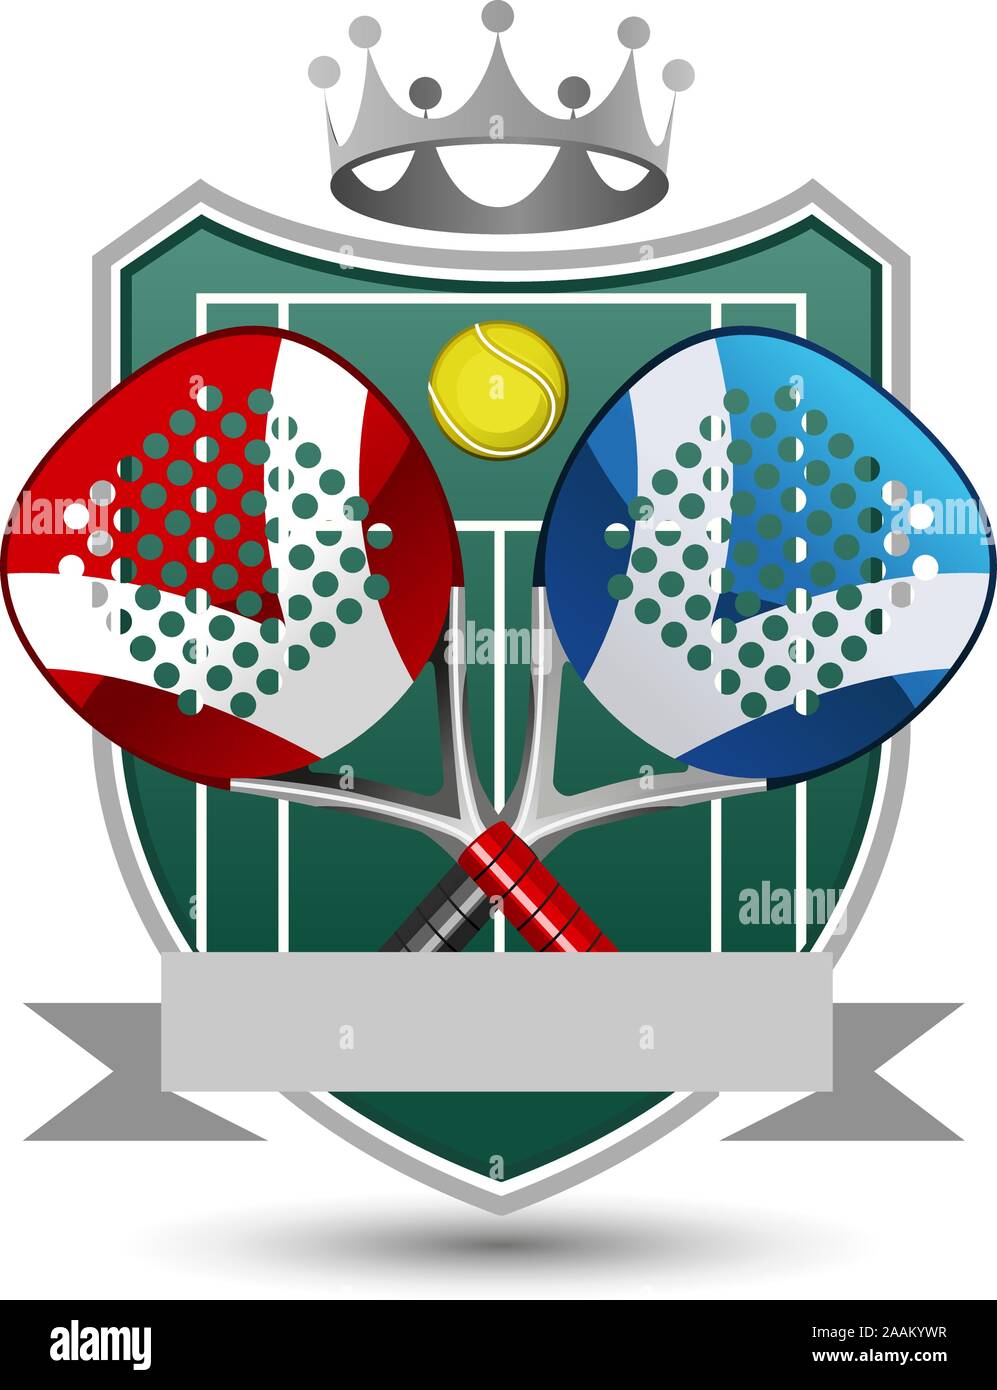 Racchetta Sport Emblema con racchette, palla, banner e corona. Illustrazione Vettoriale